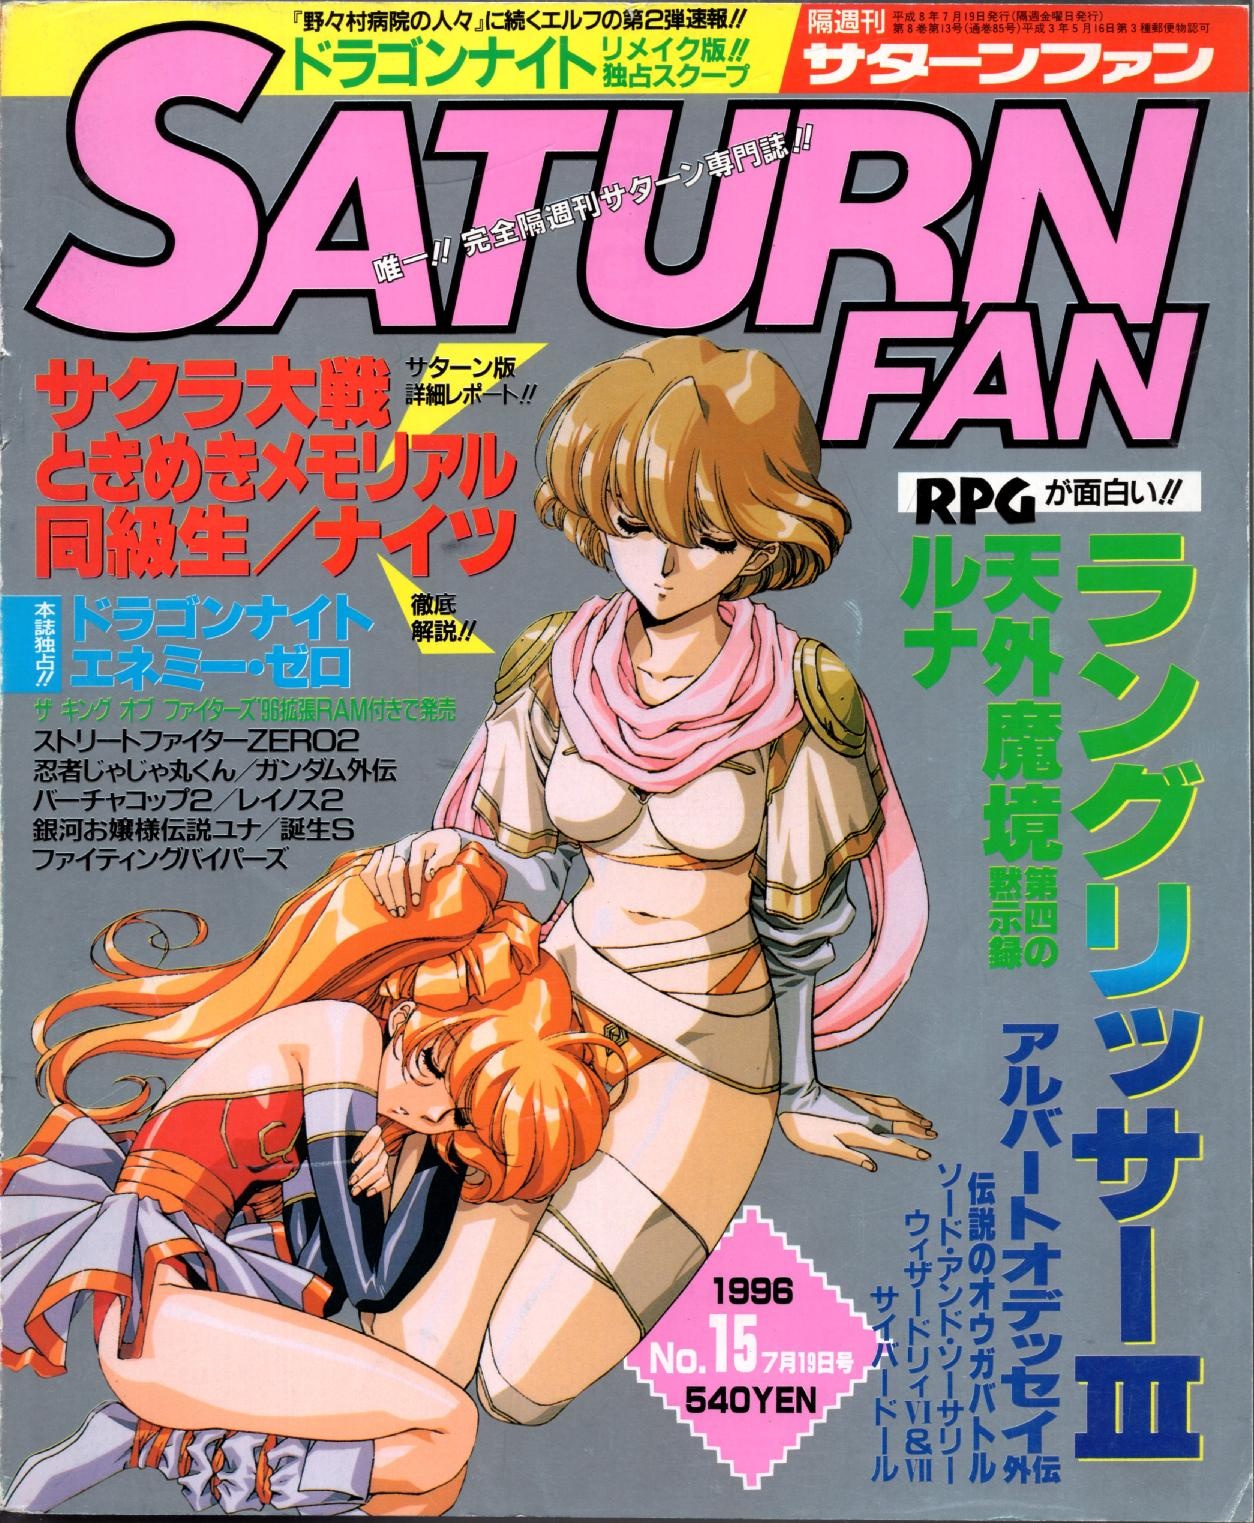 SaturnFan JP 1996-15 19960719.pdf